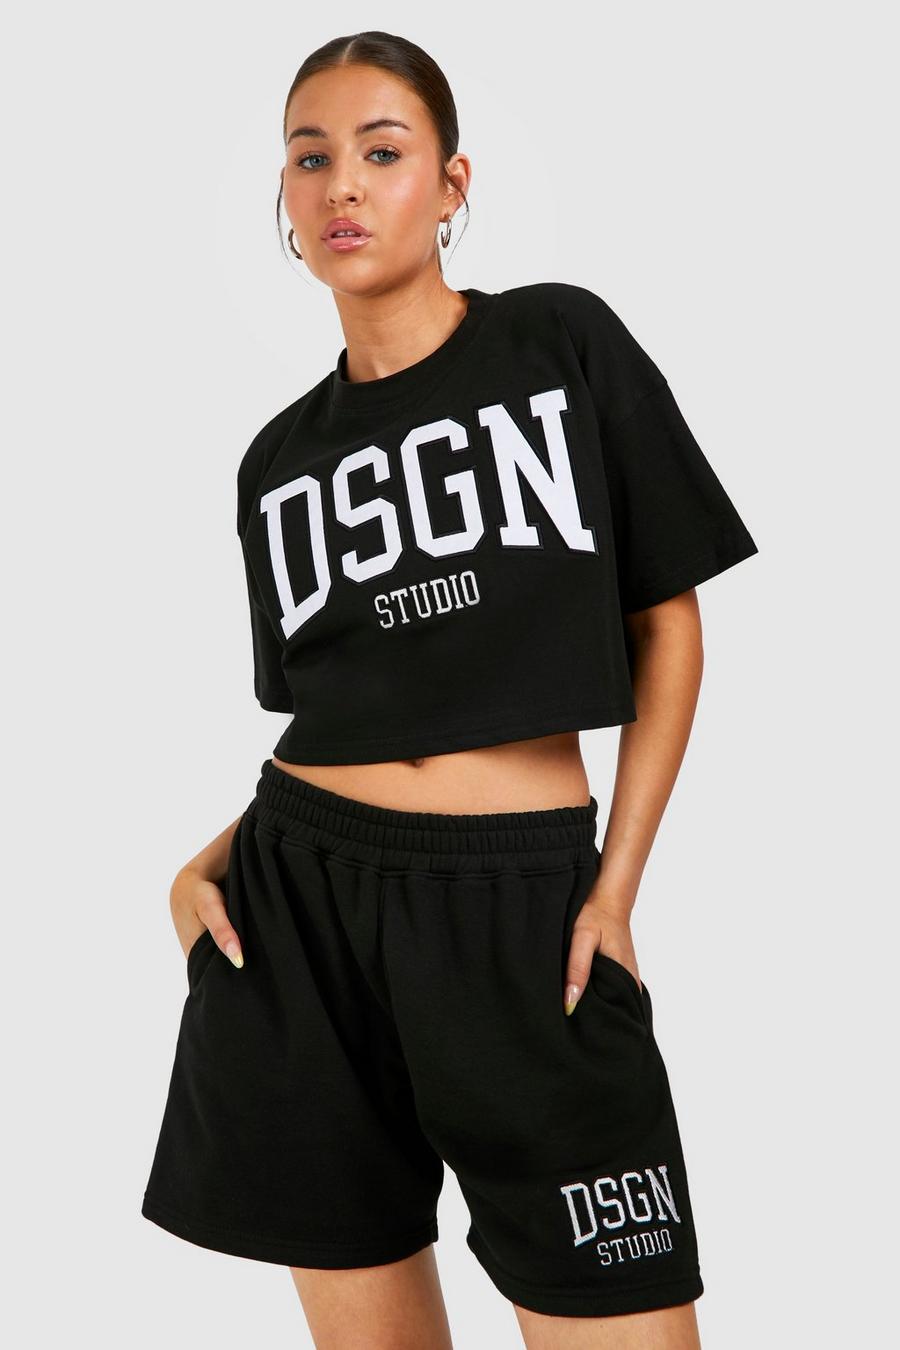 Ensemble à imprimé Dsgn Studio avec t-shirt court et short, Black